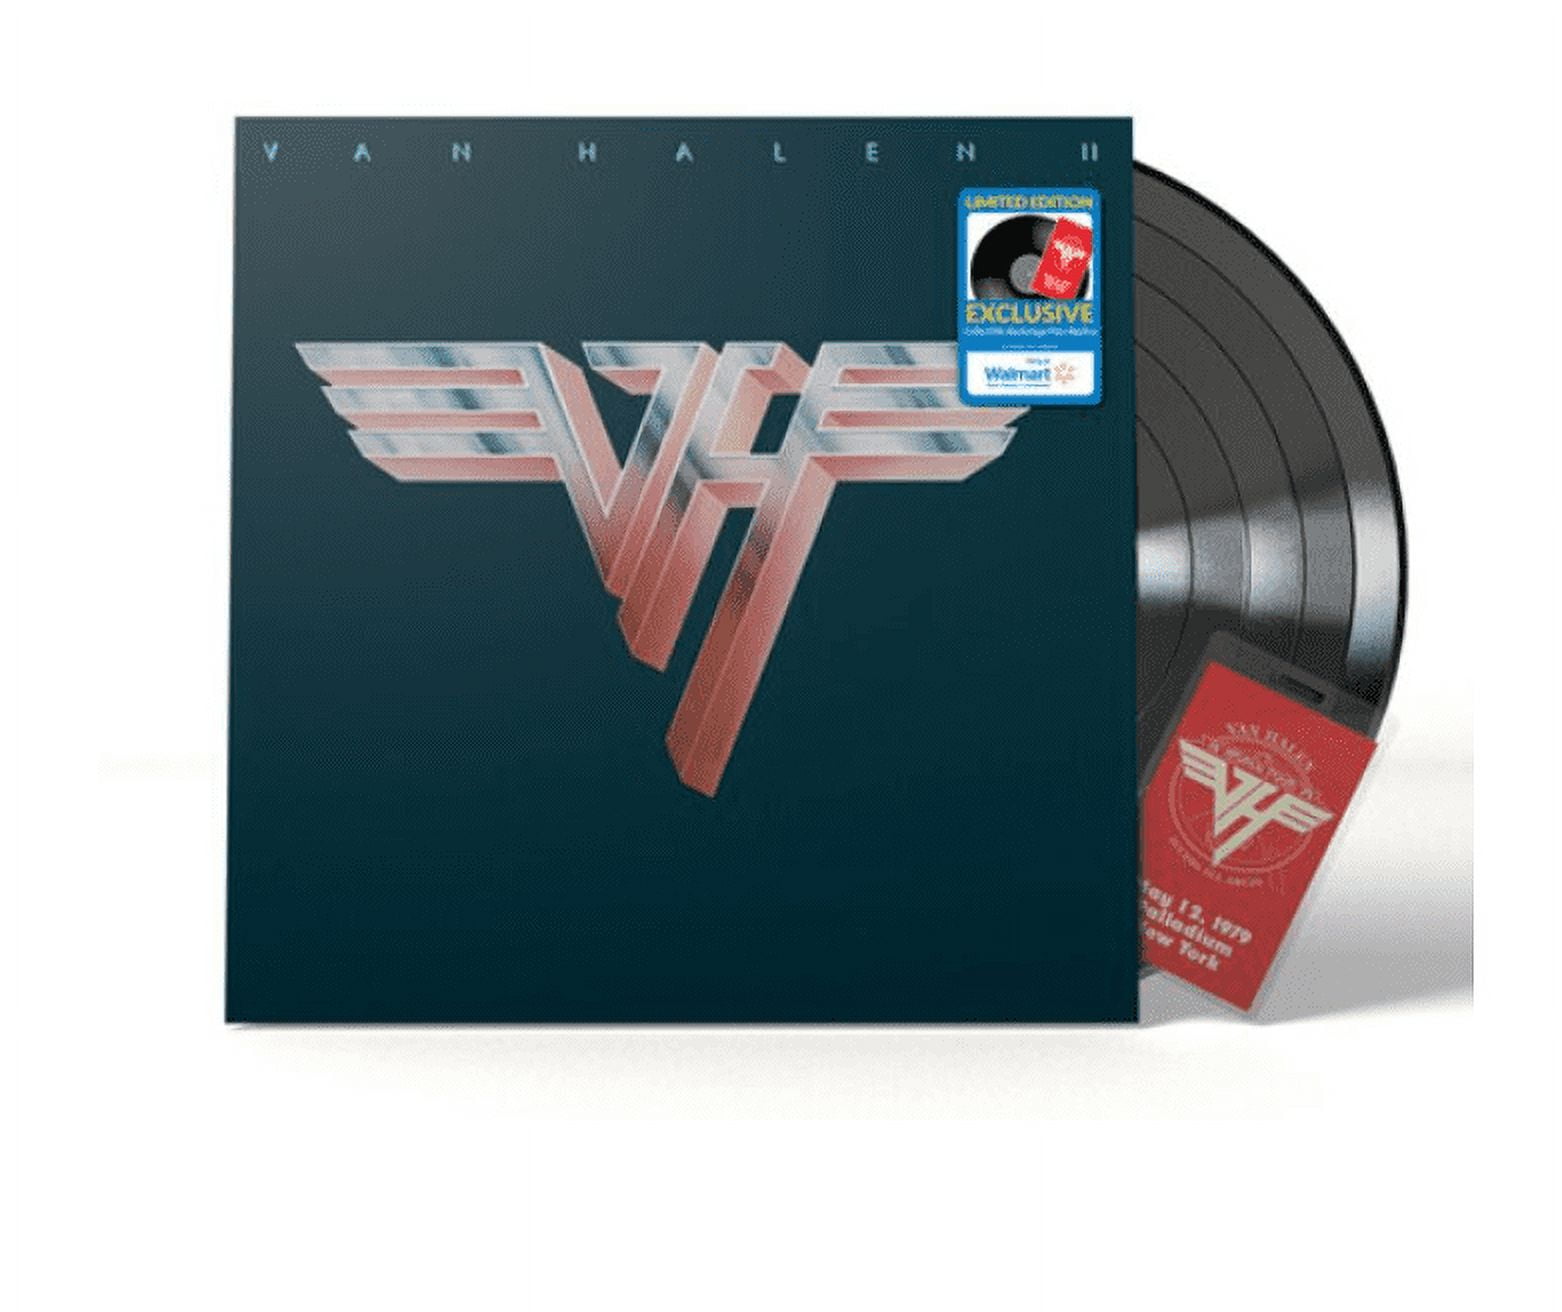 Van Halen - Van Halen II (Walmart Exclusive) - Vinyl 